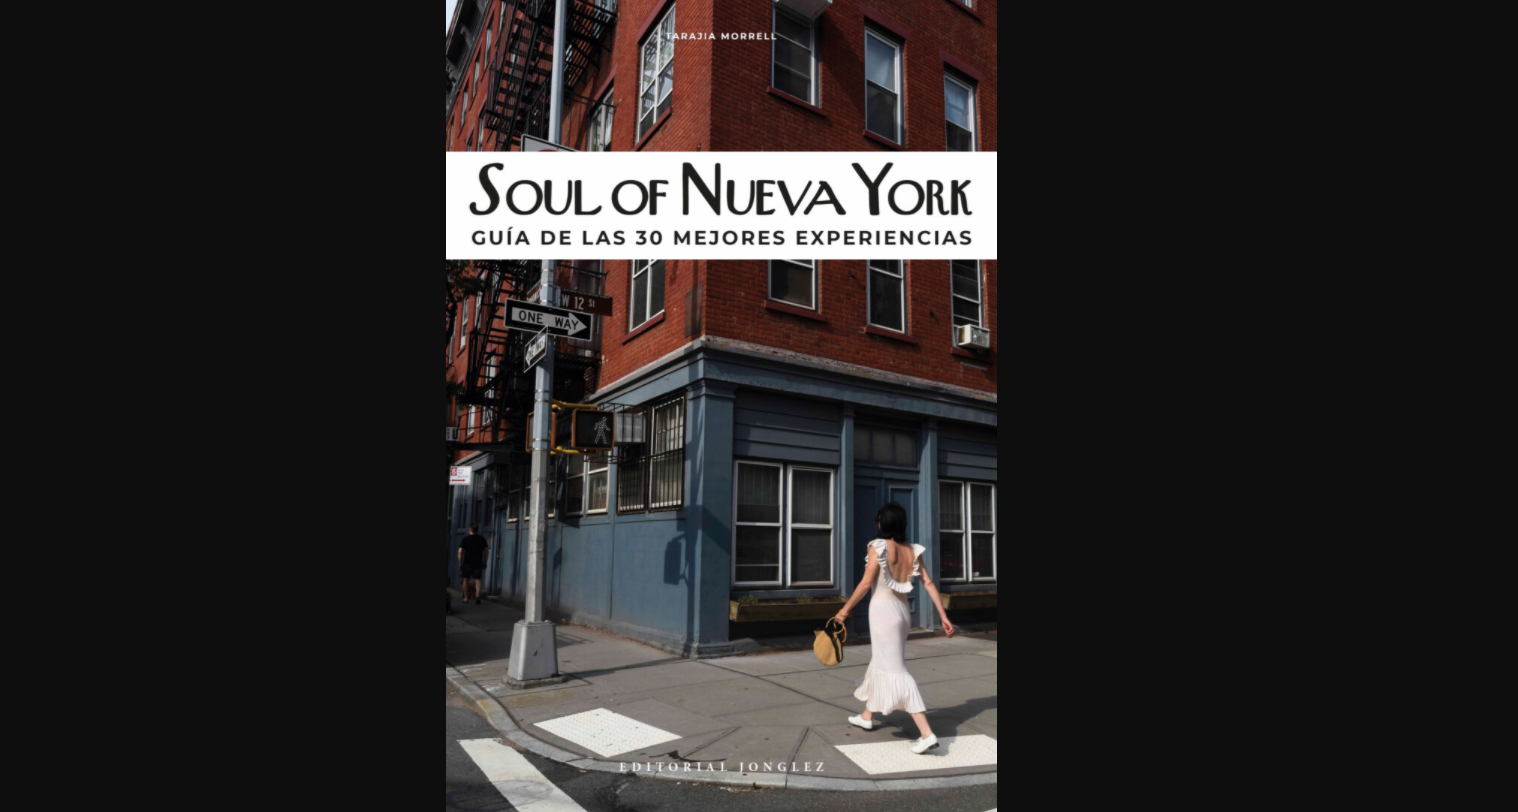 guia-de-las-30-mejores-experiencias-soul-of-nueva-york